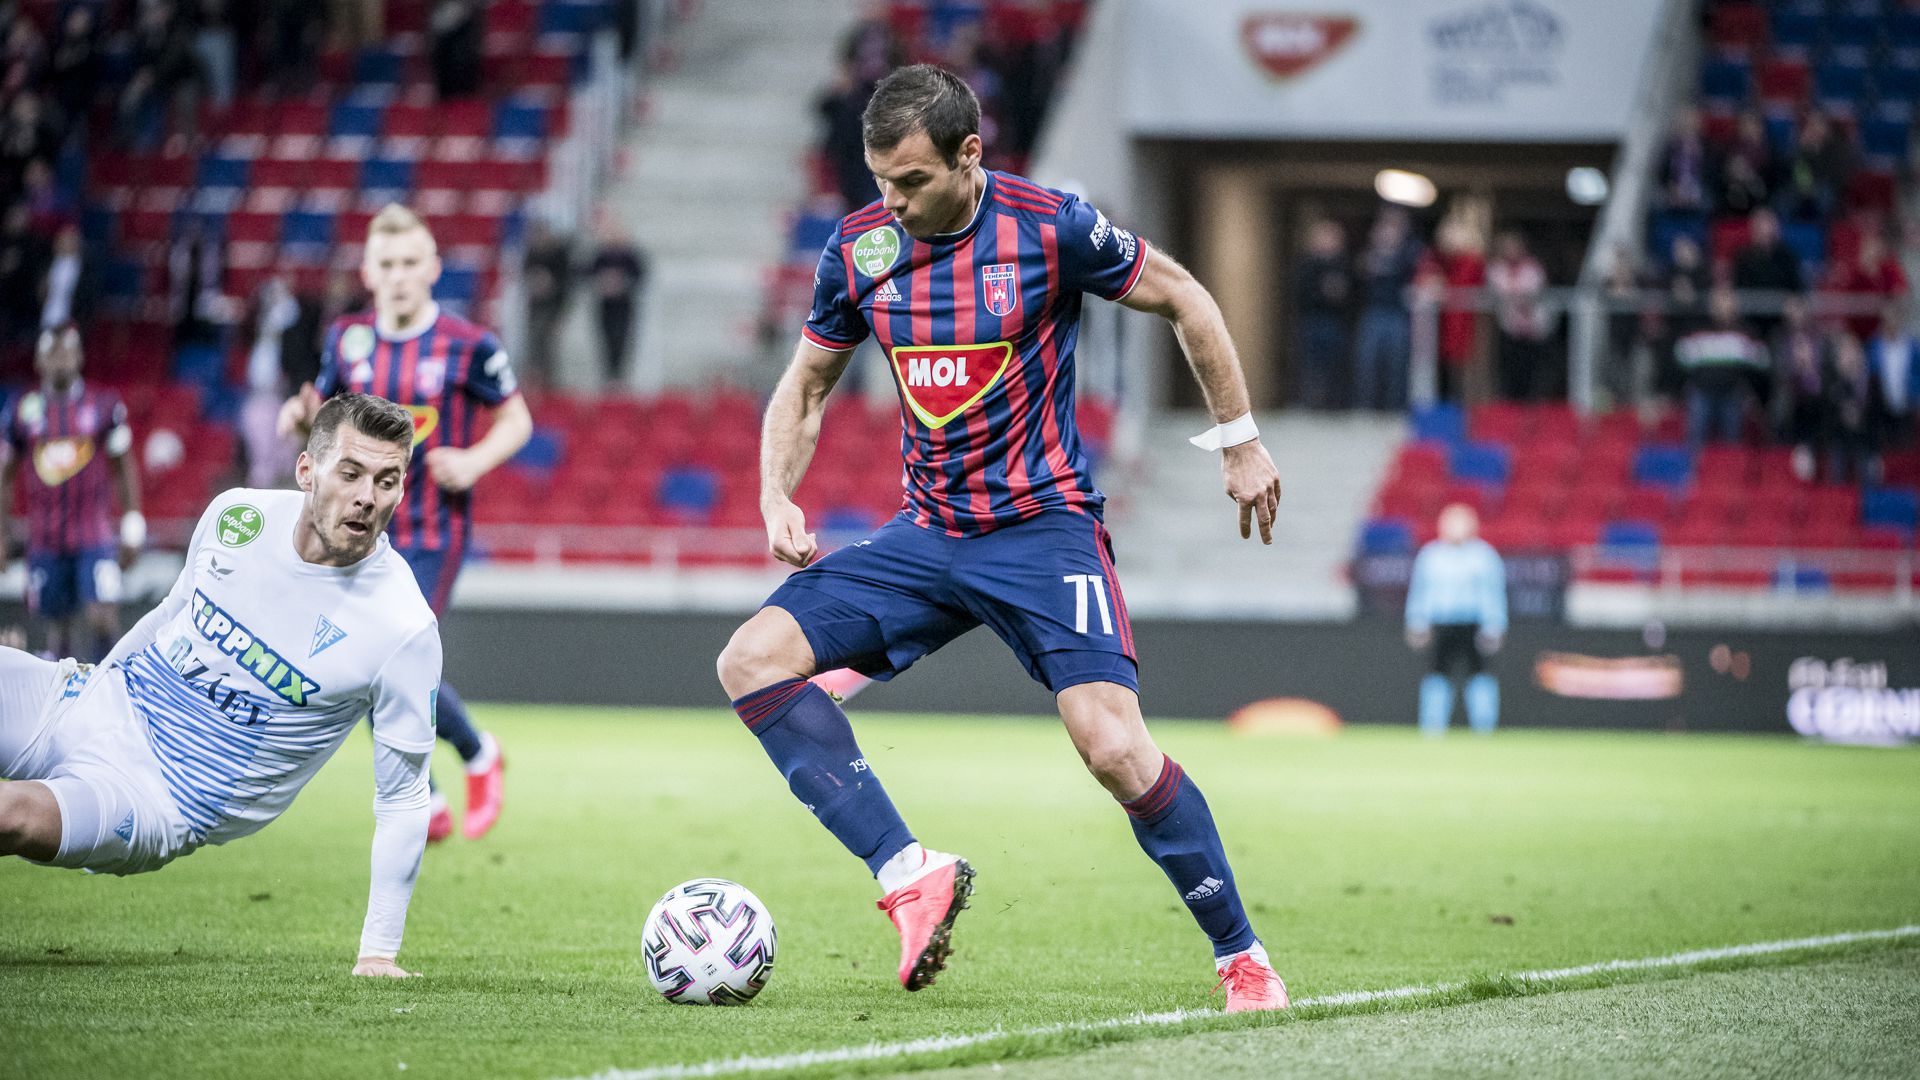 Nikolics Nemanja továbbra is a legértékesebb játékos a hazai élvonalban, de kevesebbre taksálják, mint akár egy hónapja. / Fotó: molfehervarfc.hu